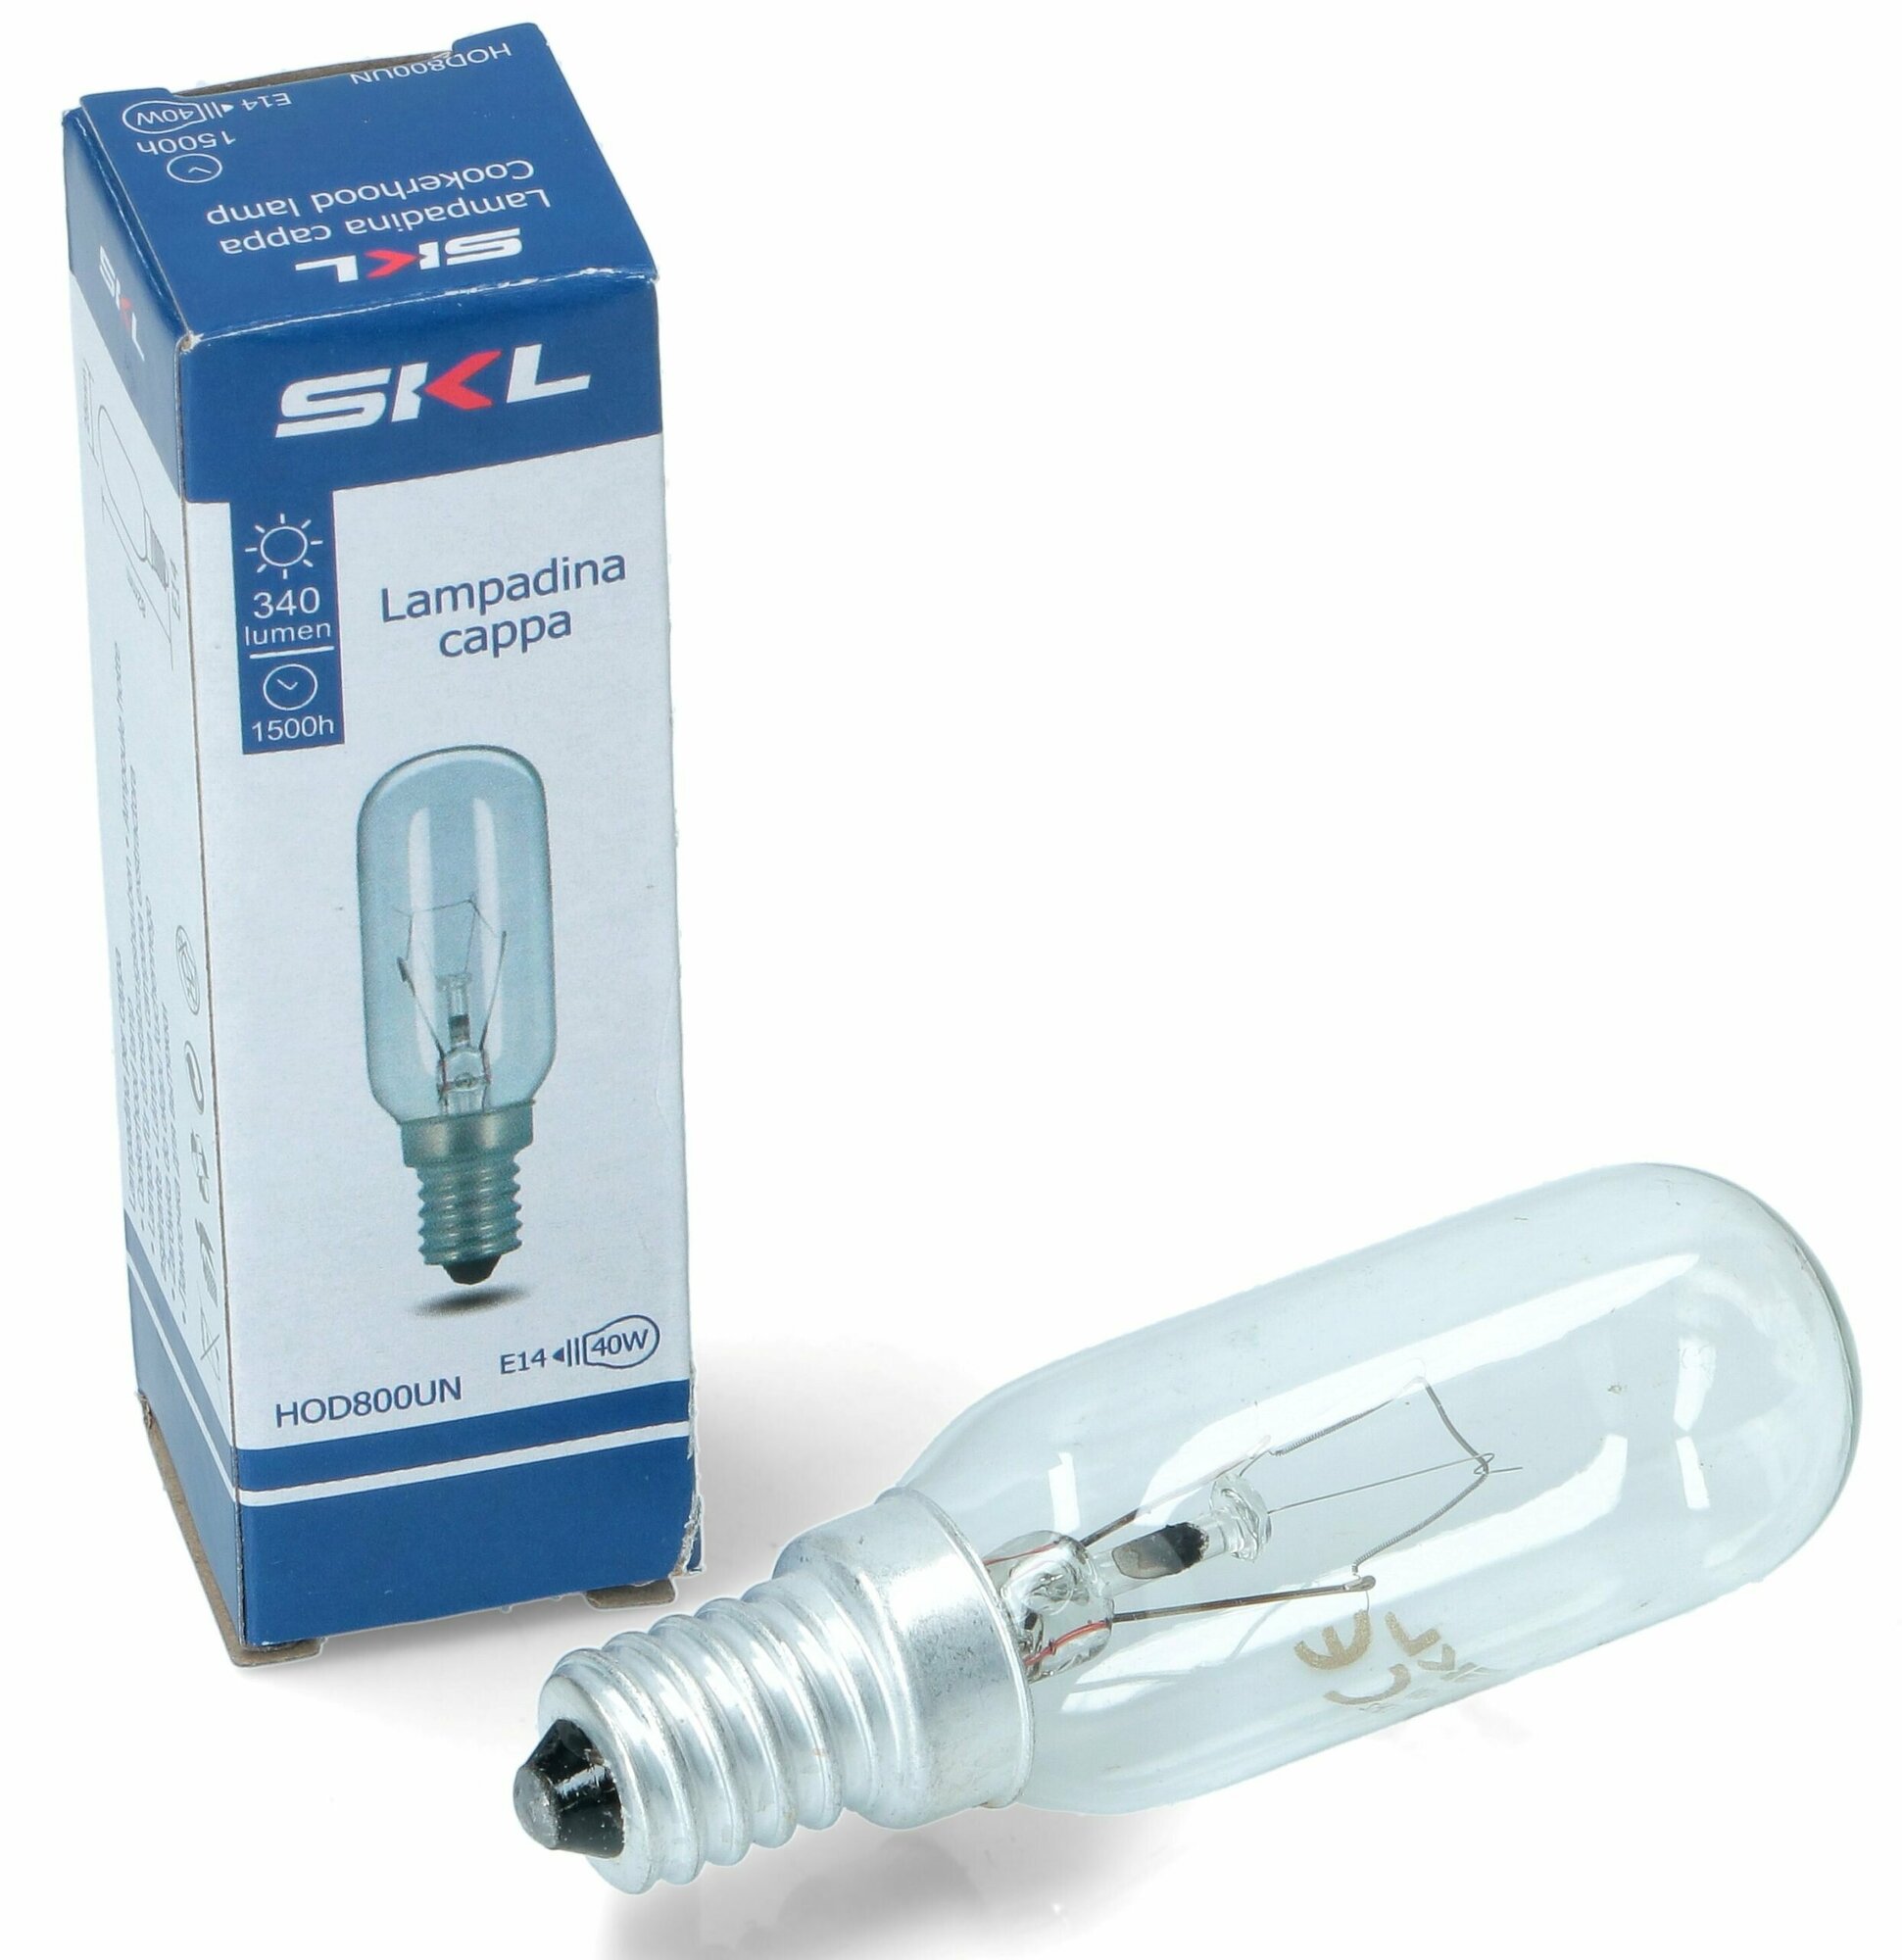 Лампа освещения для вытяжек E14 40W SKL универсальная HOD800UN